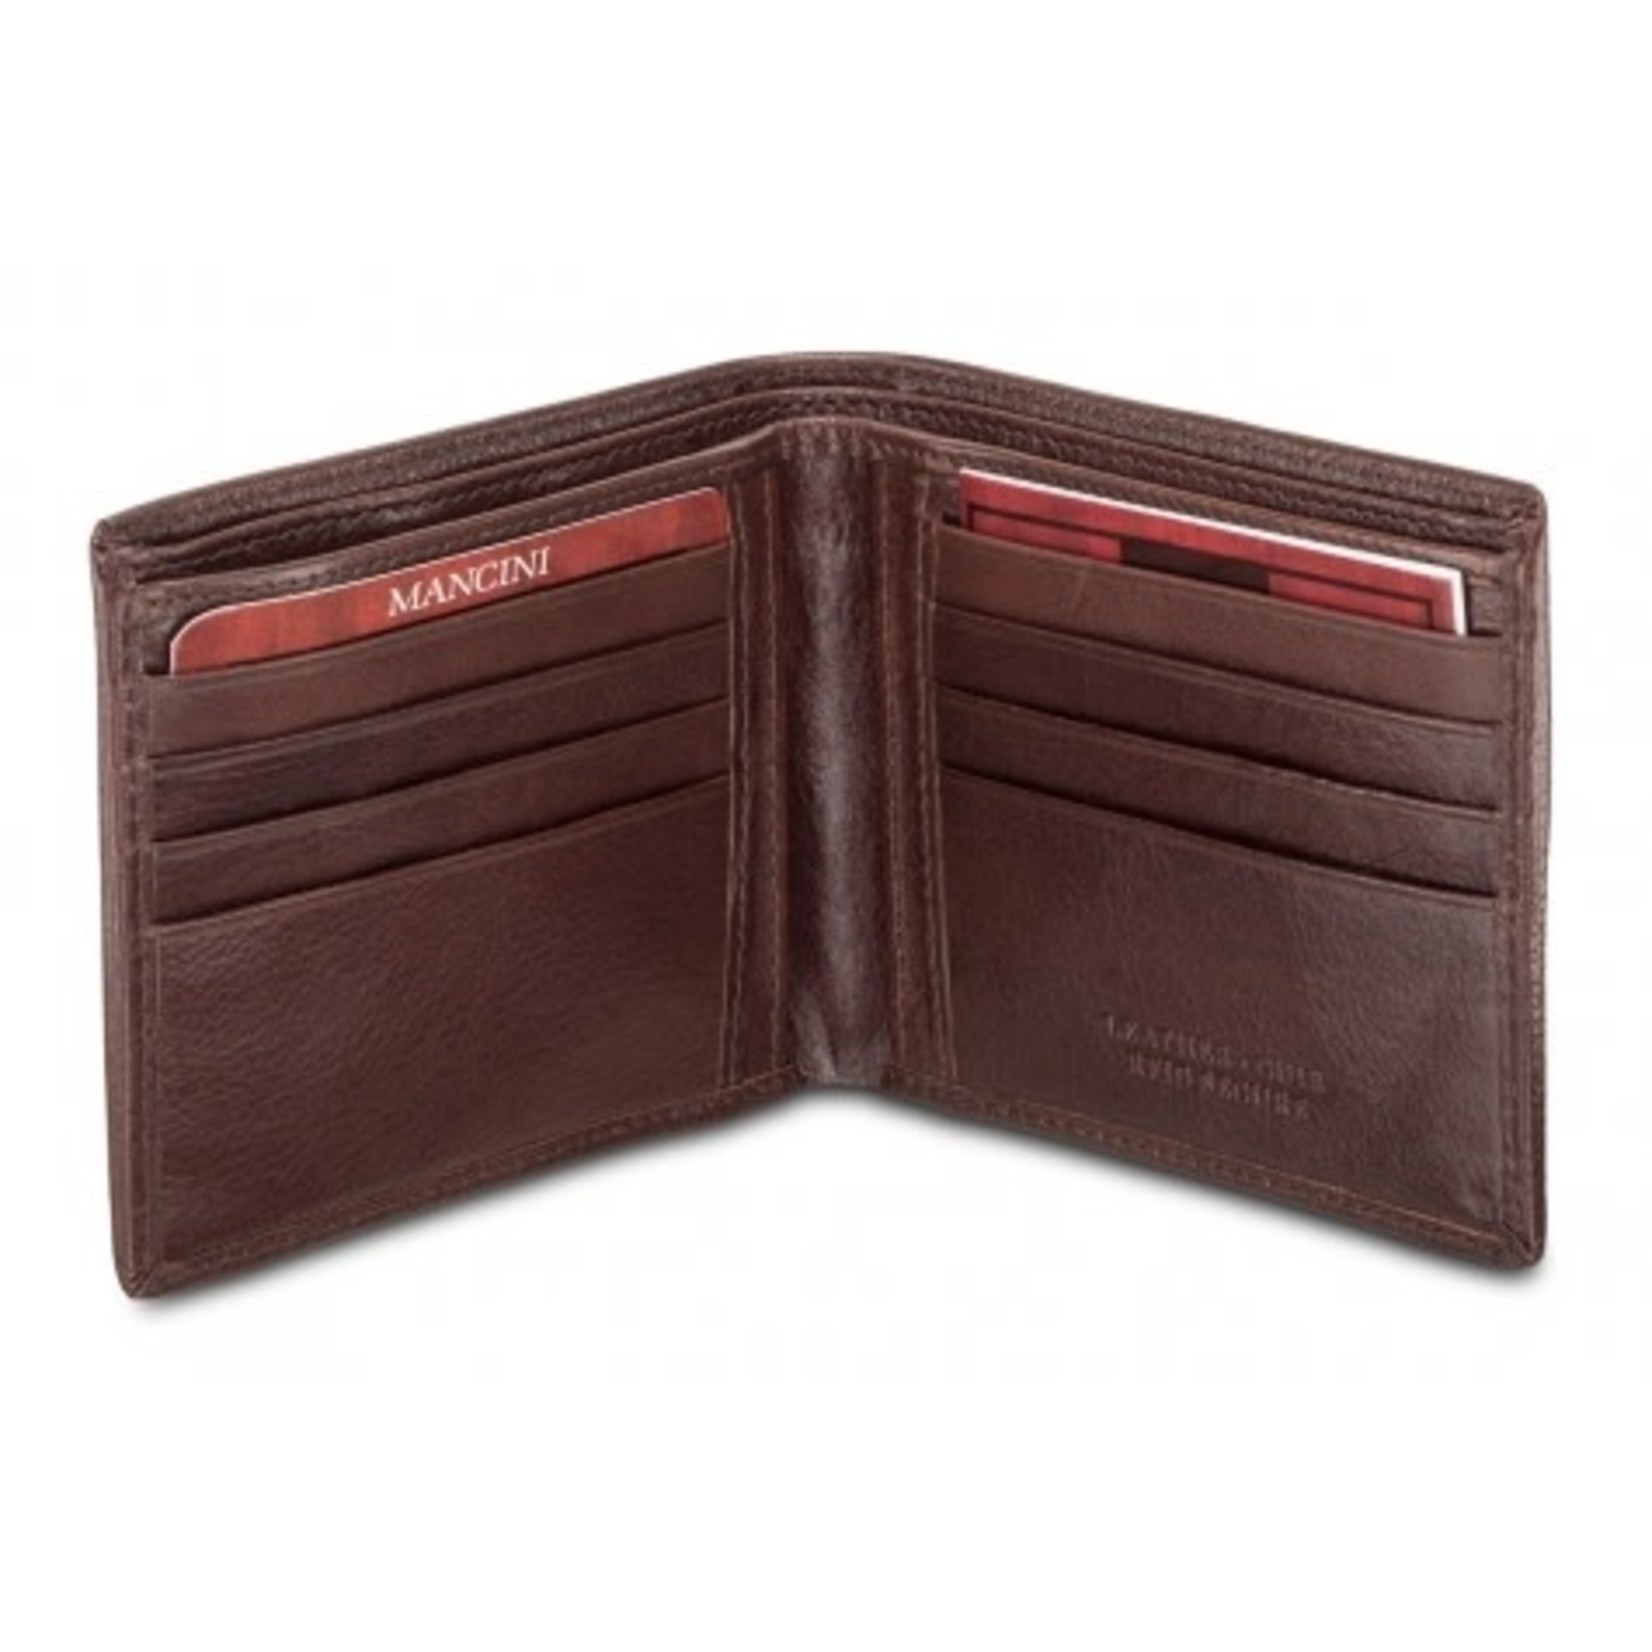 Leather Billfold Wallet - Mens Wallet